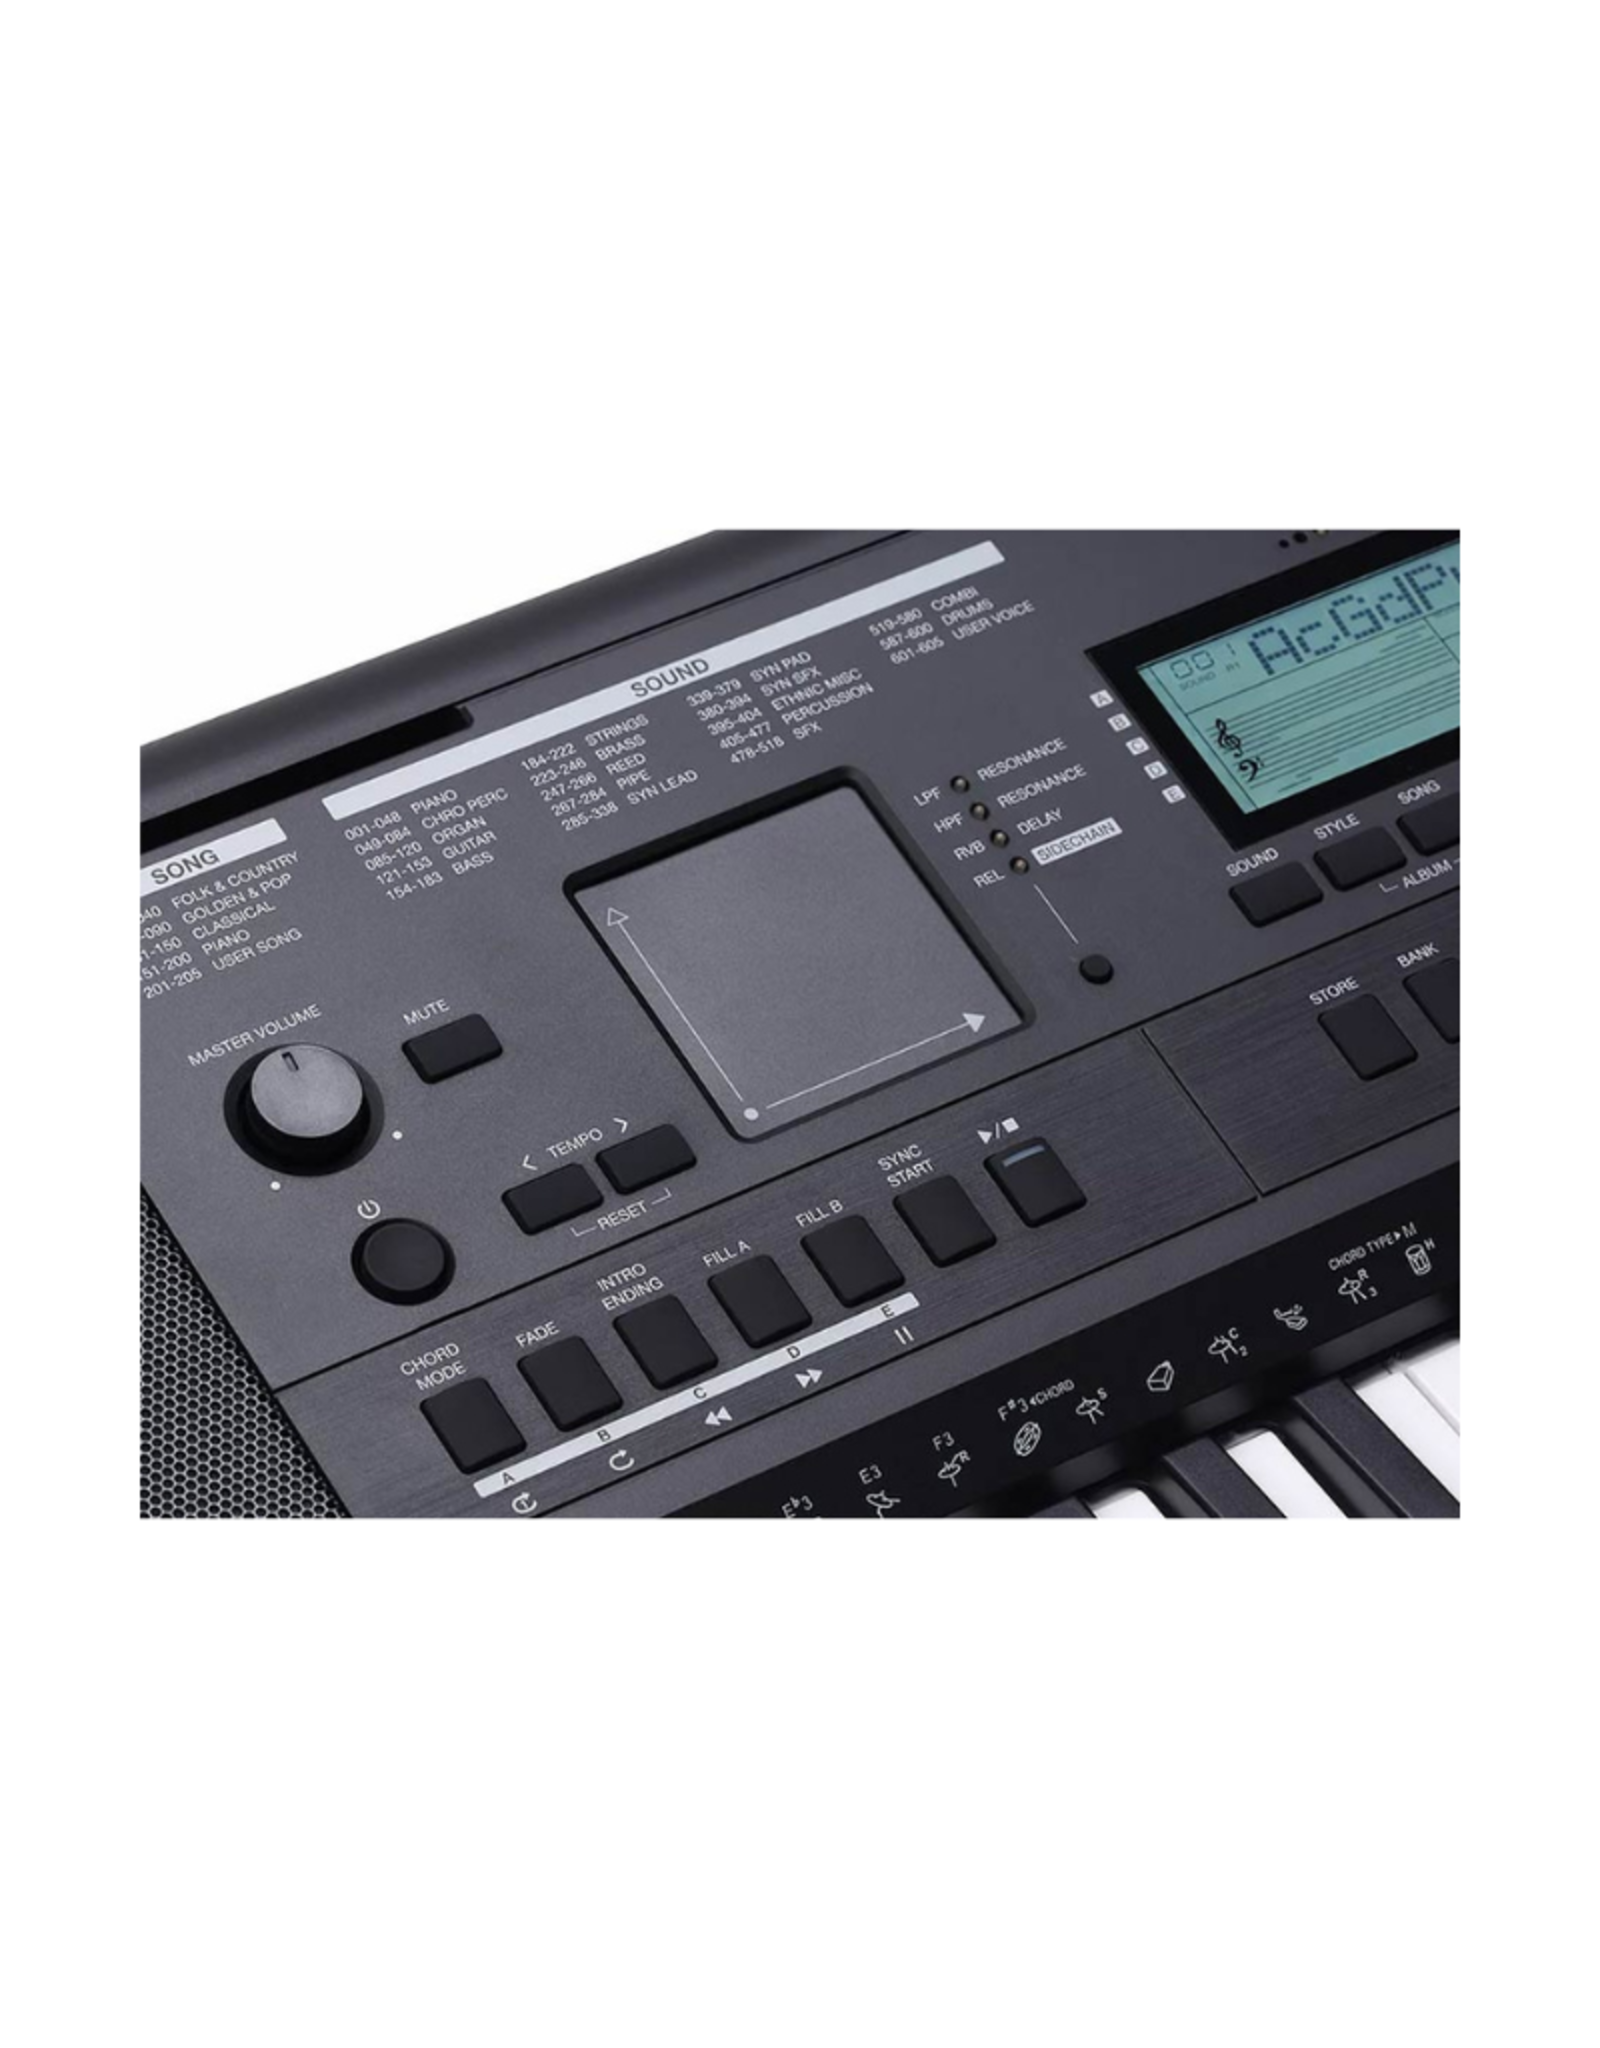 Medeli Medeli MK401 - Millennium Series Keyboard - Met Specter Akkoordenkaart